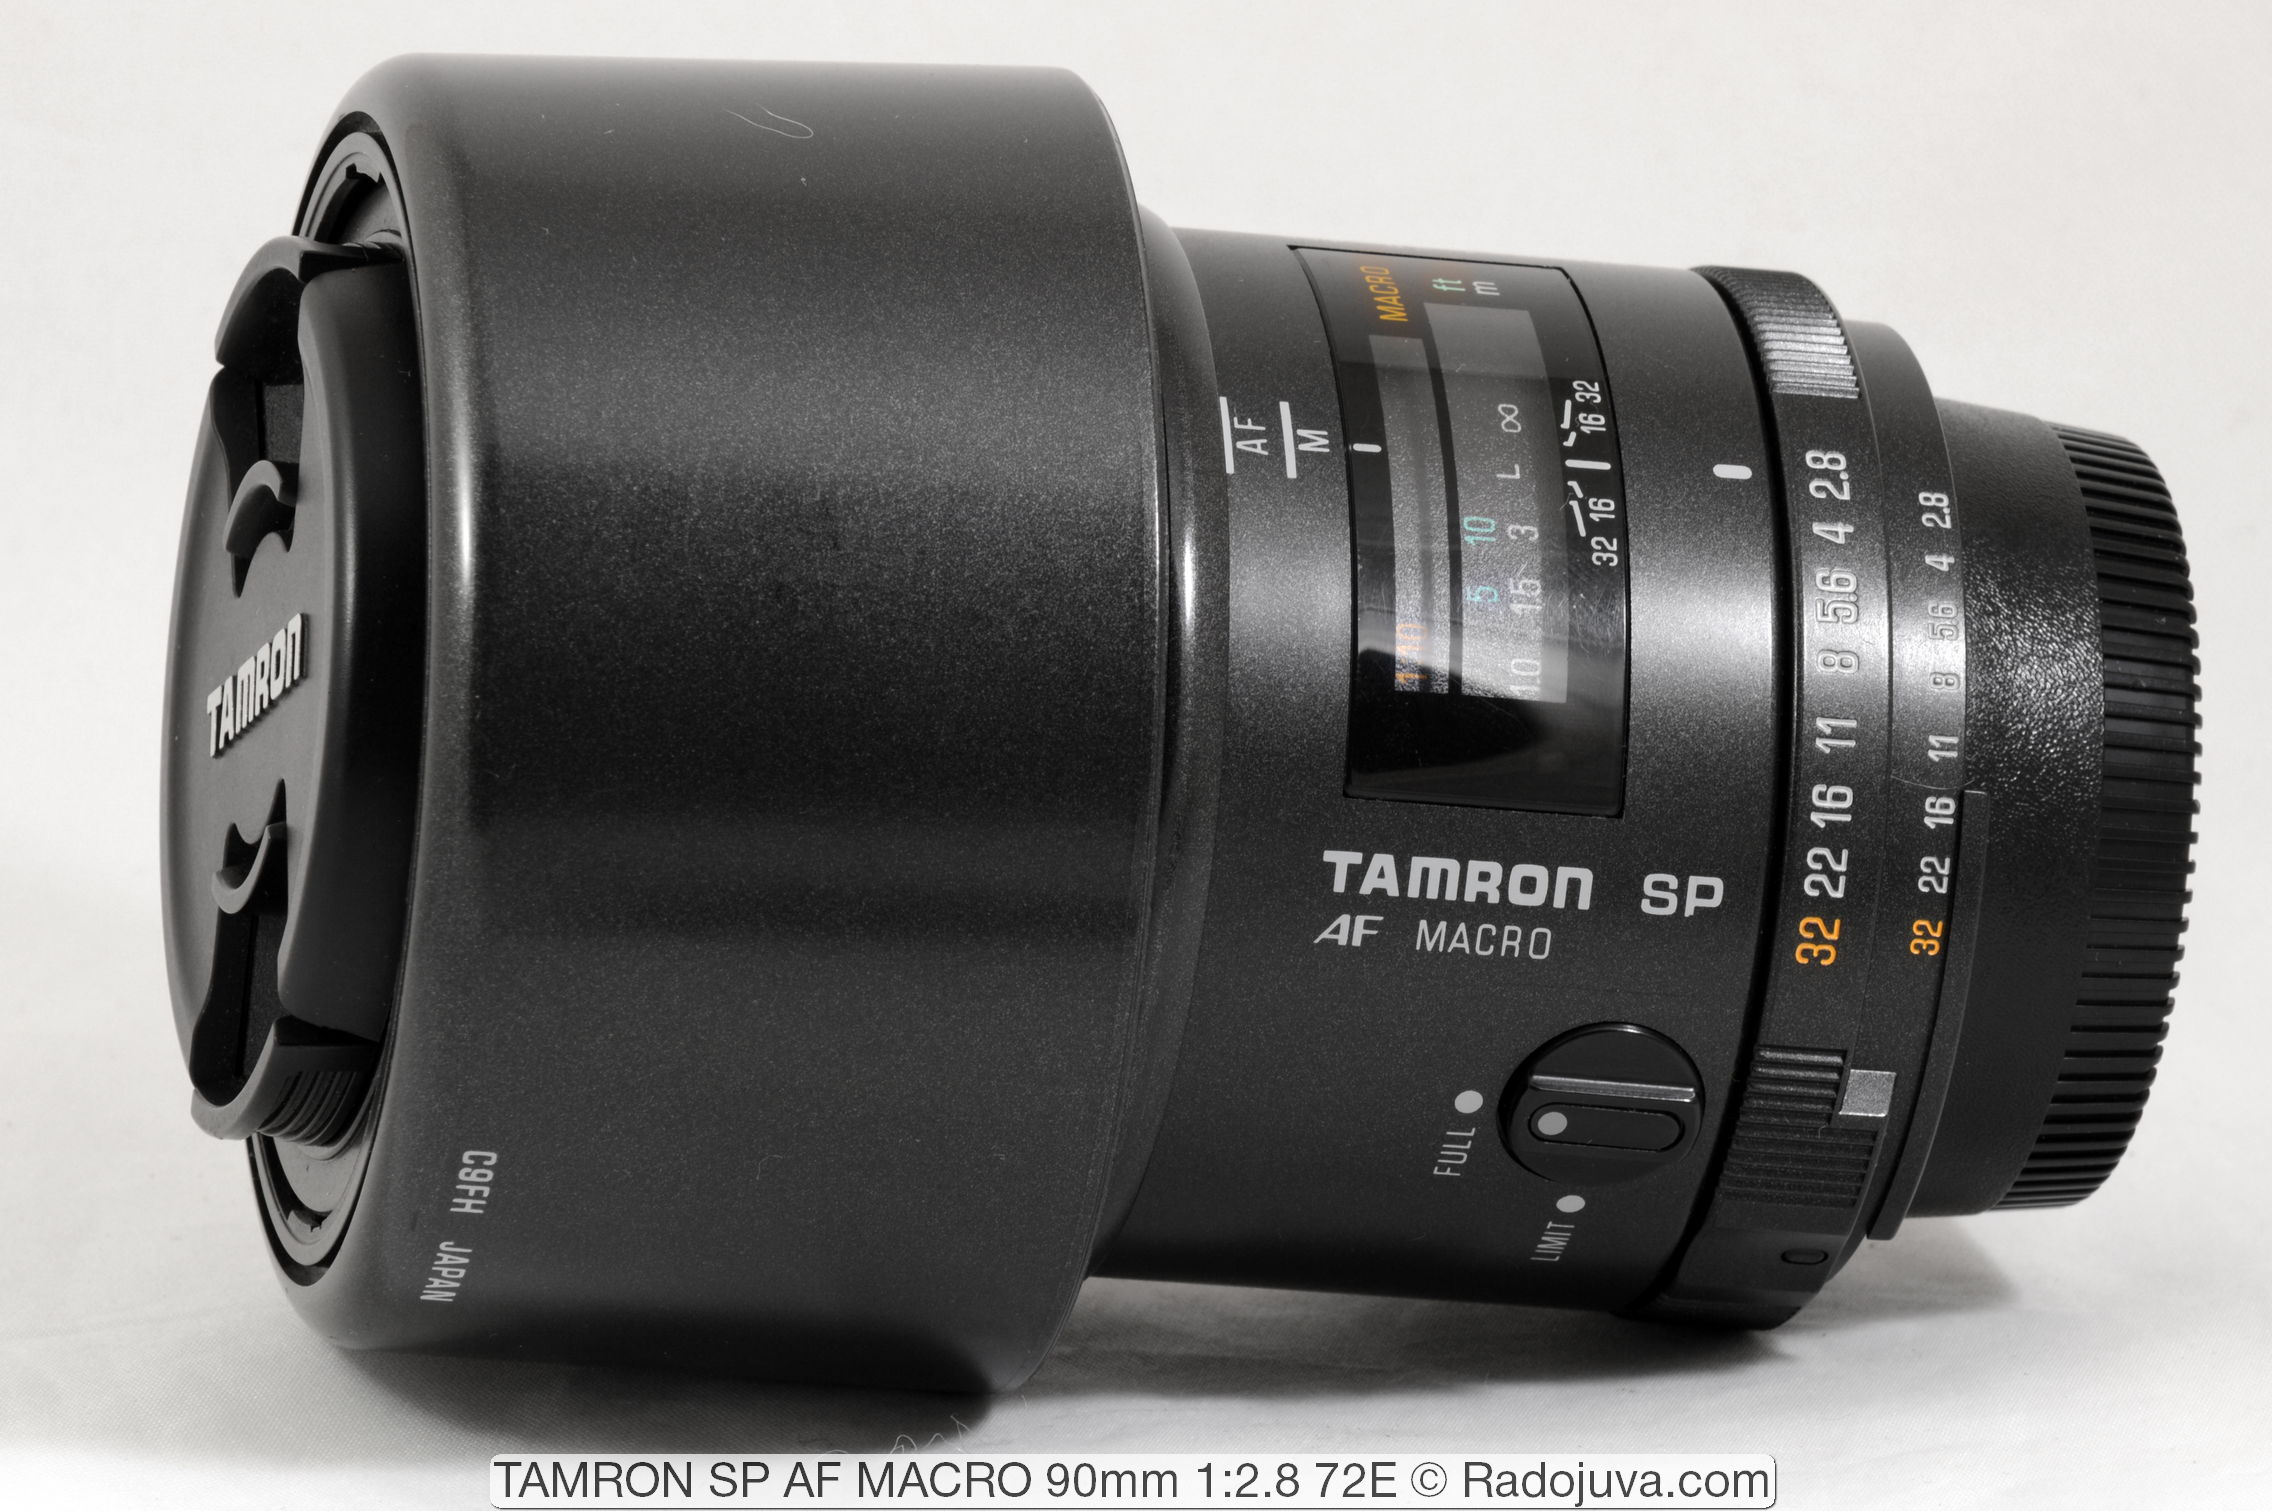 TAMRON SP AF MACRO 90mm 1:2.8 72E